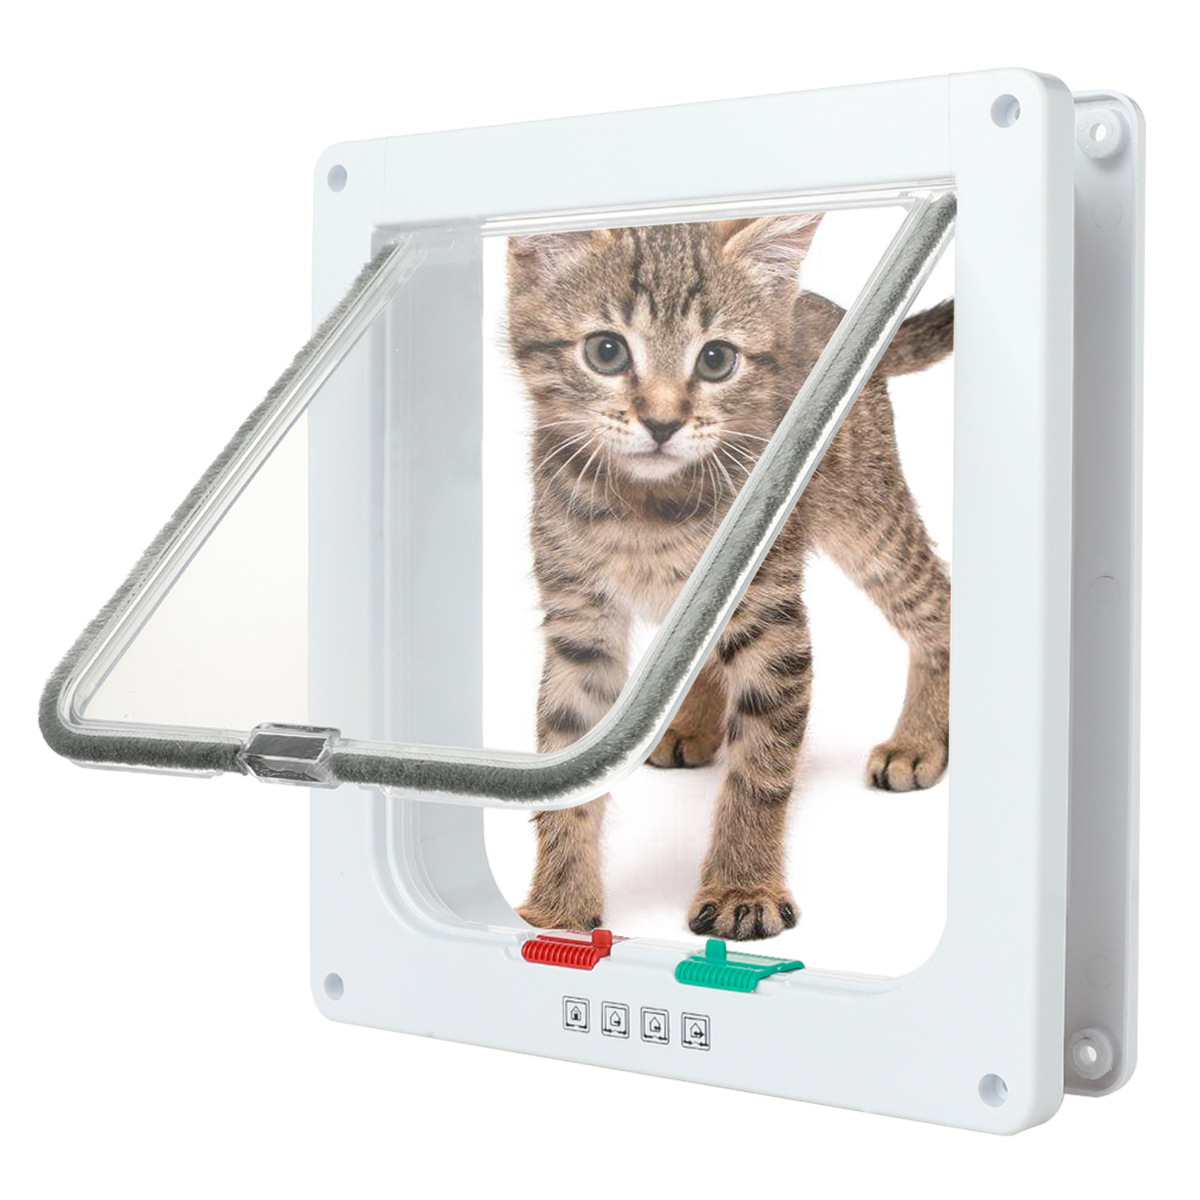 Cross-Border Supply Pet Supplies Cat Door Opening Dog Door Hole Can Control the Direction of Entry and Exit Pet Door Pet Supplies